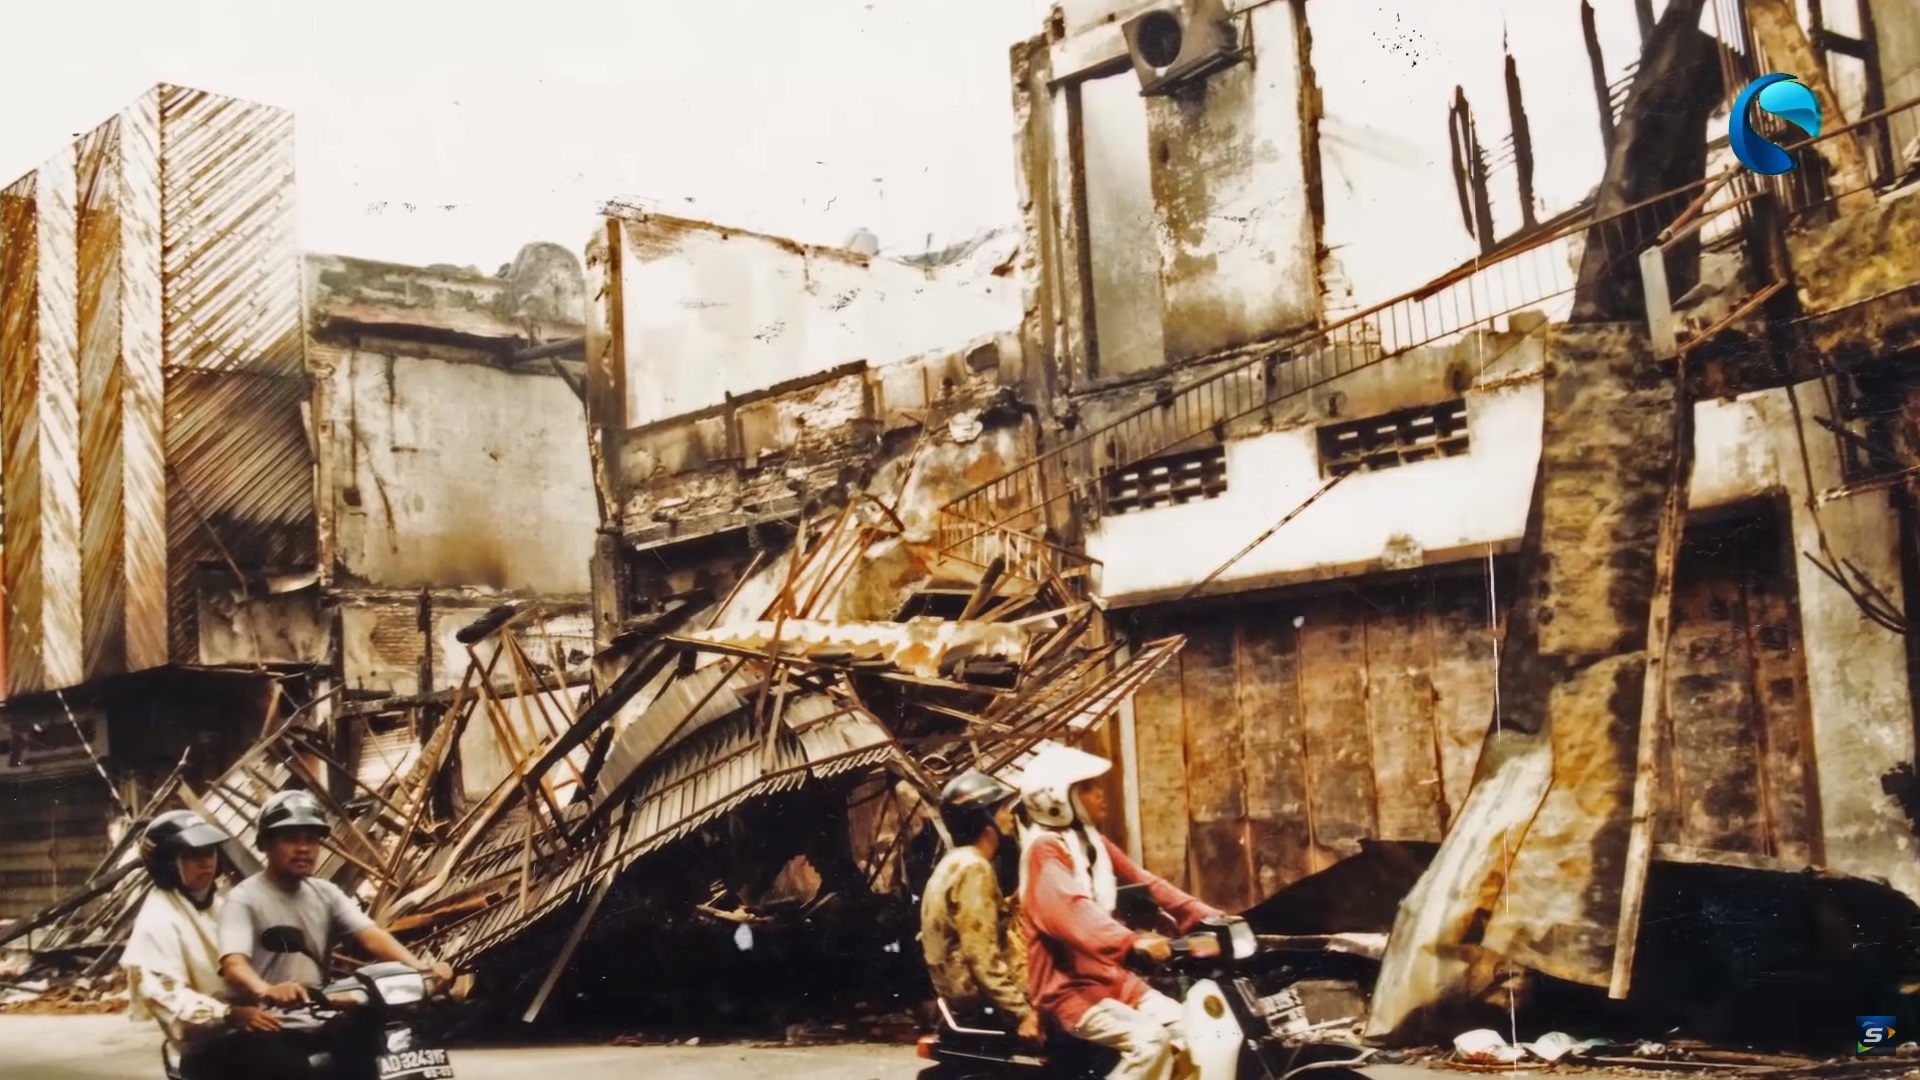    Sisa kebakaran dan kerusuhan daerah Coyudan, Mei di Solo, 1998     